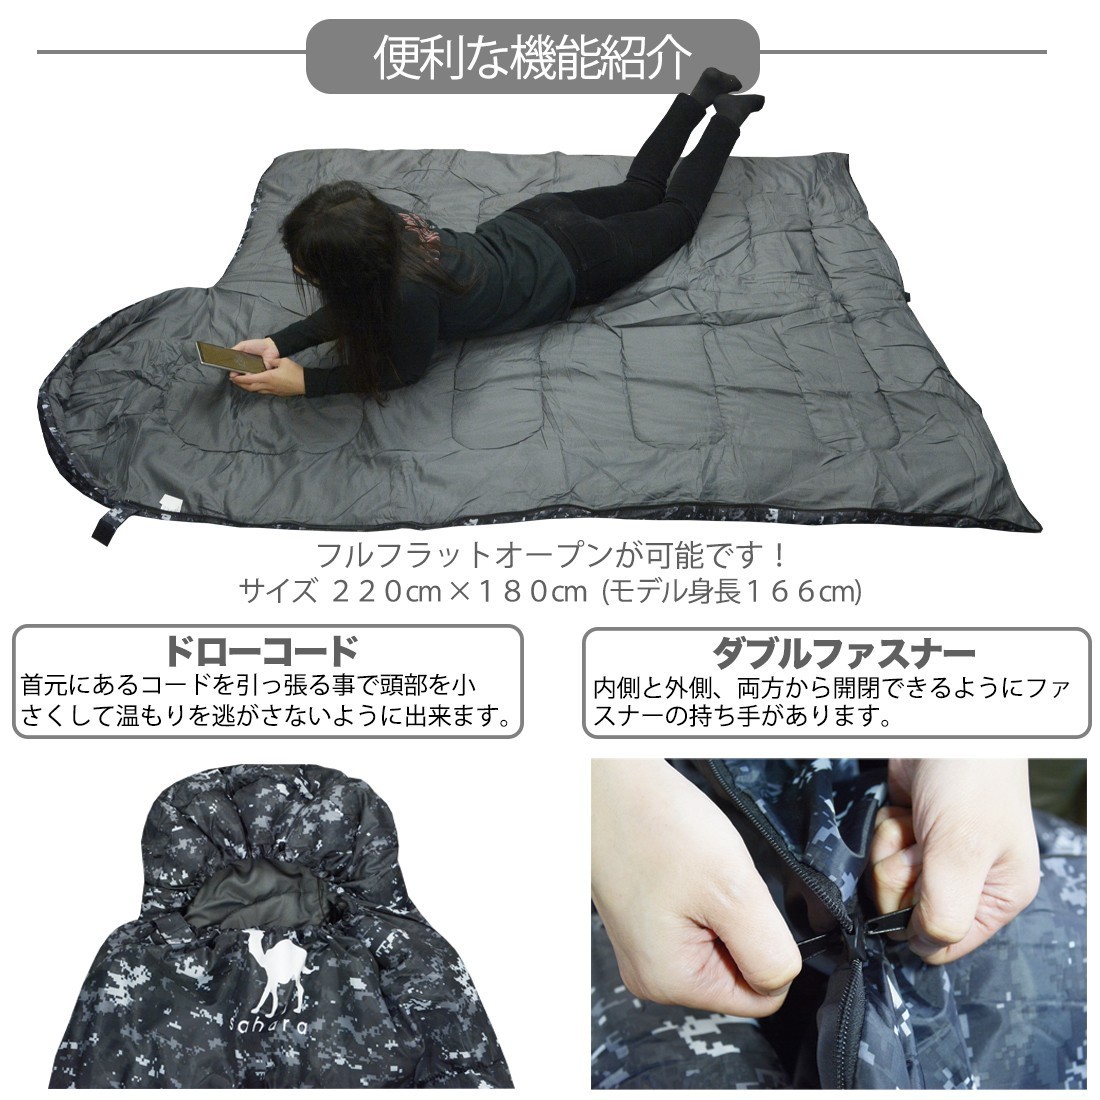 寝袋 シュラフ 封筒型 -15度 デジタル迷彩 デザート 新品未使用 キャンプ